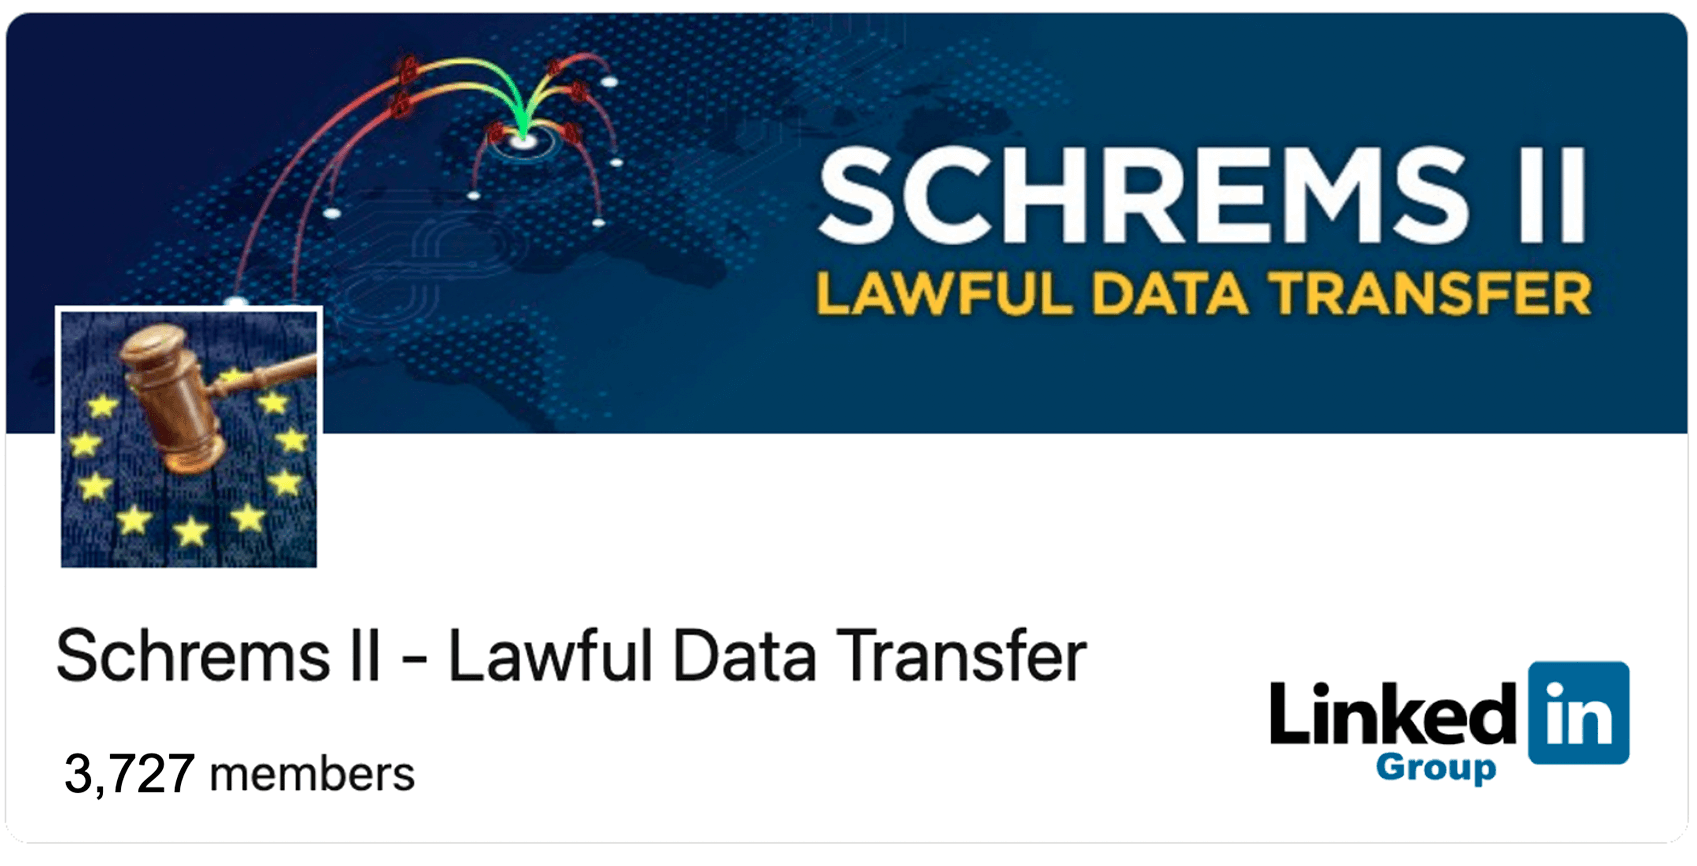 Schrems II - Lawful Data Transfer